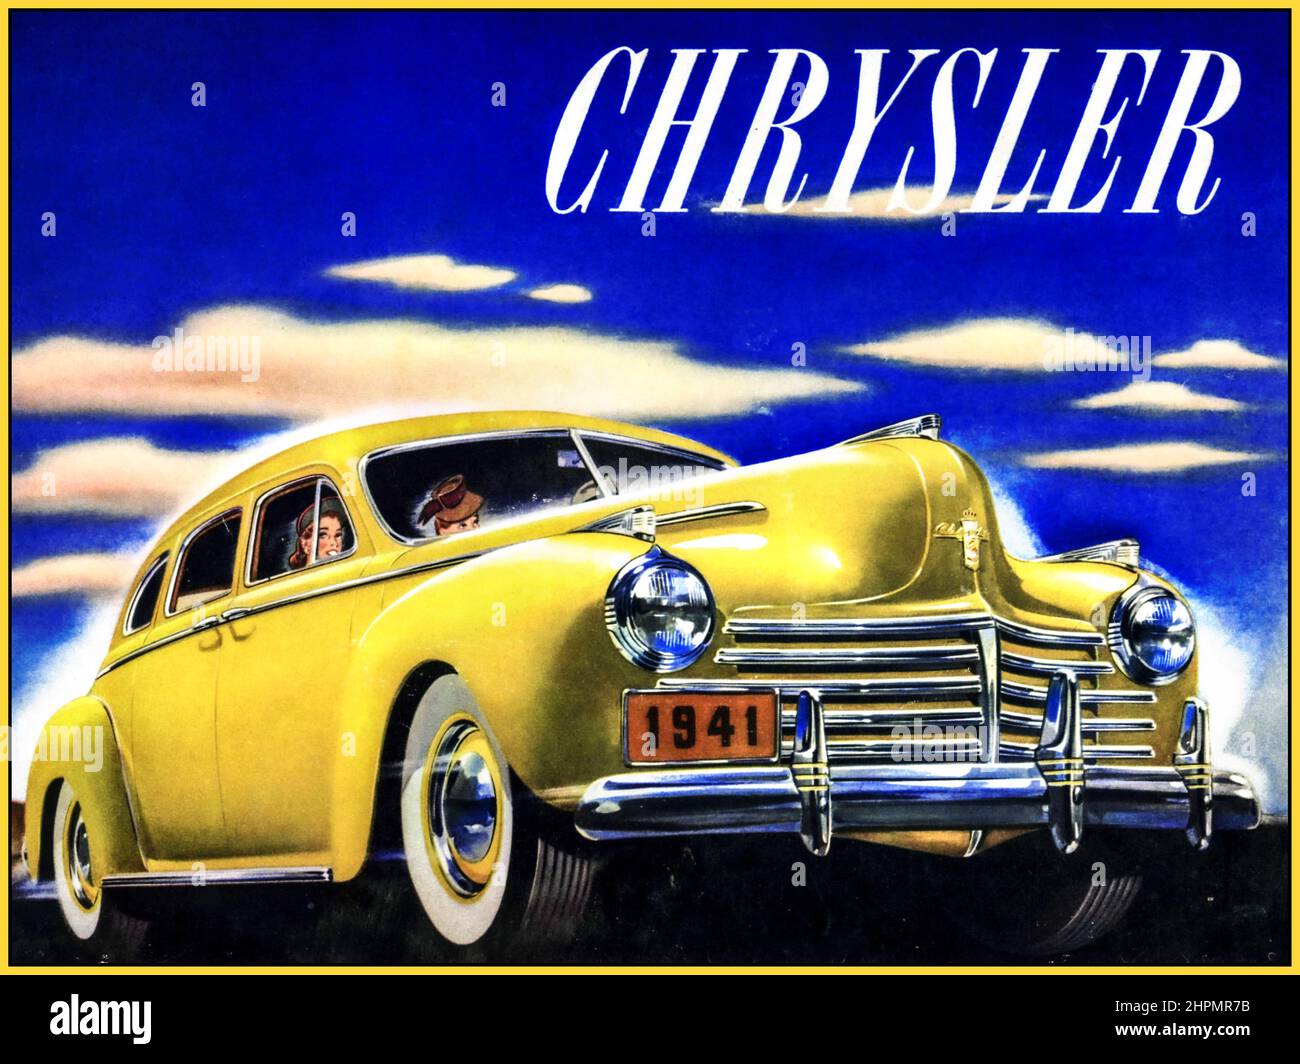 1941 Chrysler Sedan 6 posti American Automobile Brochure Illustrazione USA la Serie 1941 Imperial Crown C-33 è rimasta esclusiva e sono disponibili modelli speciali.Cambio manuale a 3 marce con trasmissione a fluido con overdrive Vacamatic 3 marce semi-automatico Foto Stock